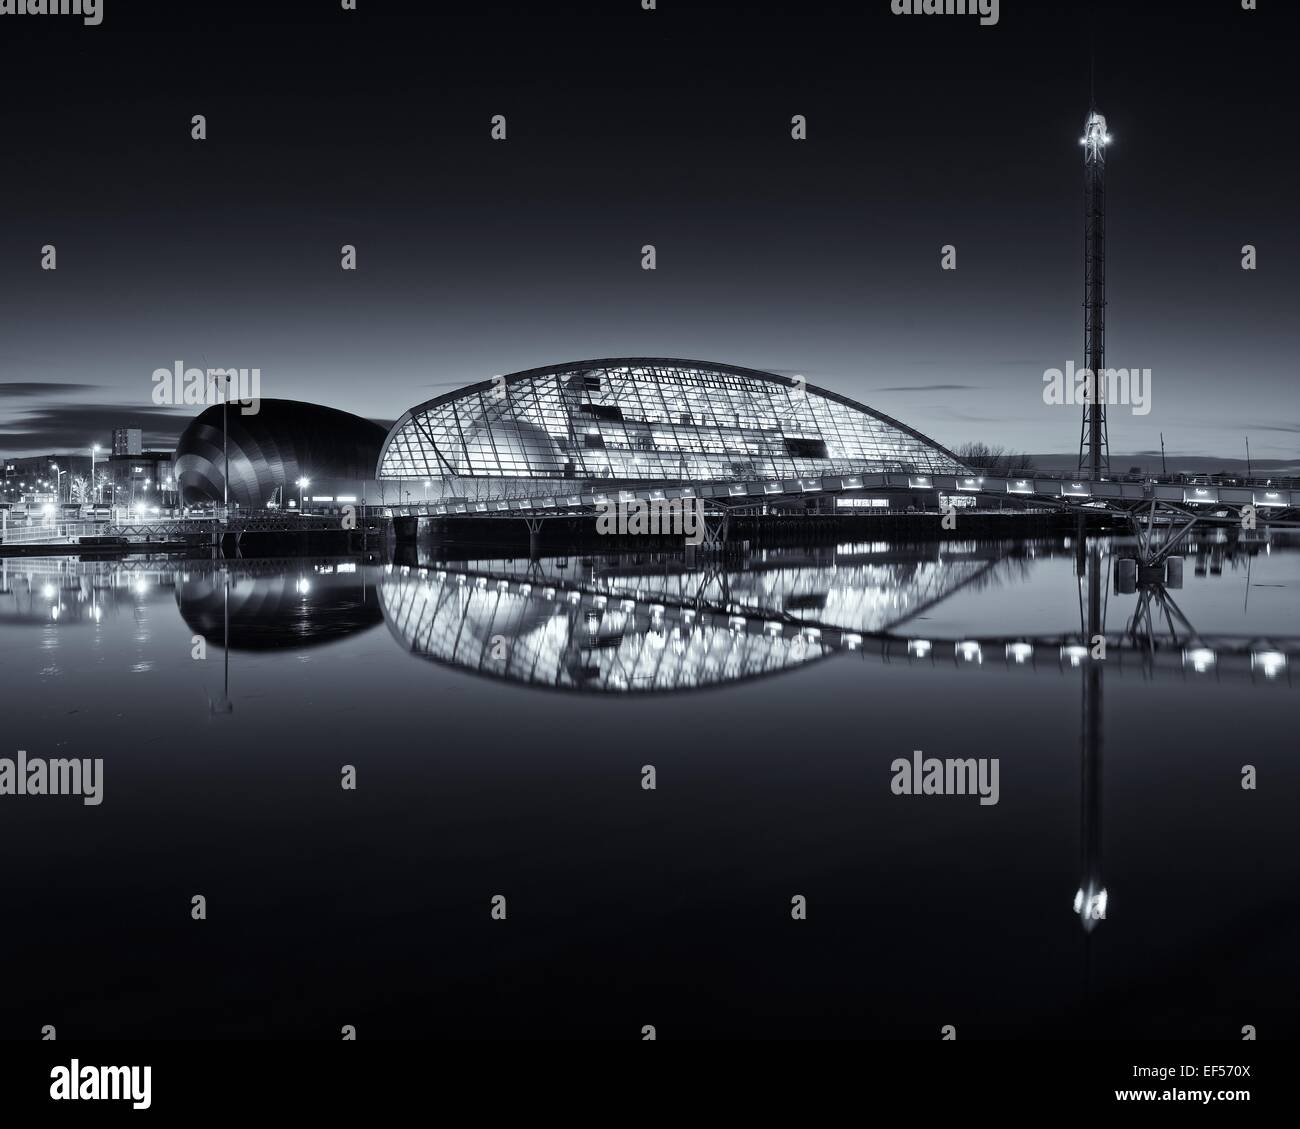 Une image couleur de la Glasgow Science Centre reflétée sur une rivière Clyde toujours prendre le soir heure de flou Banque D'Images